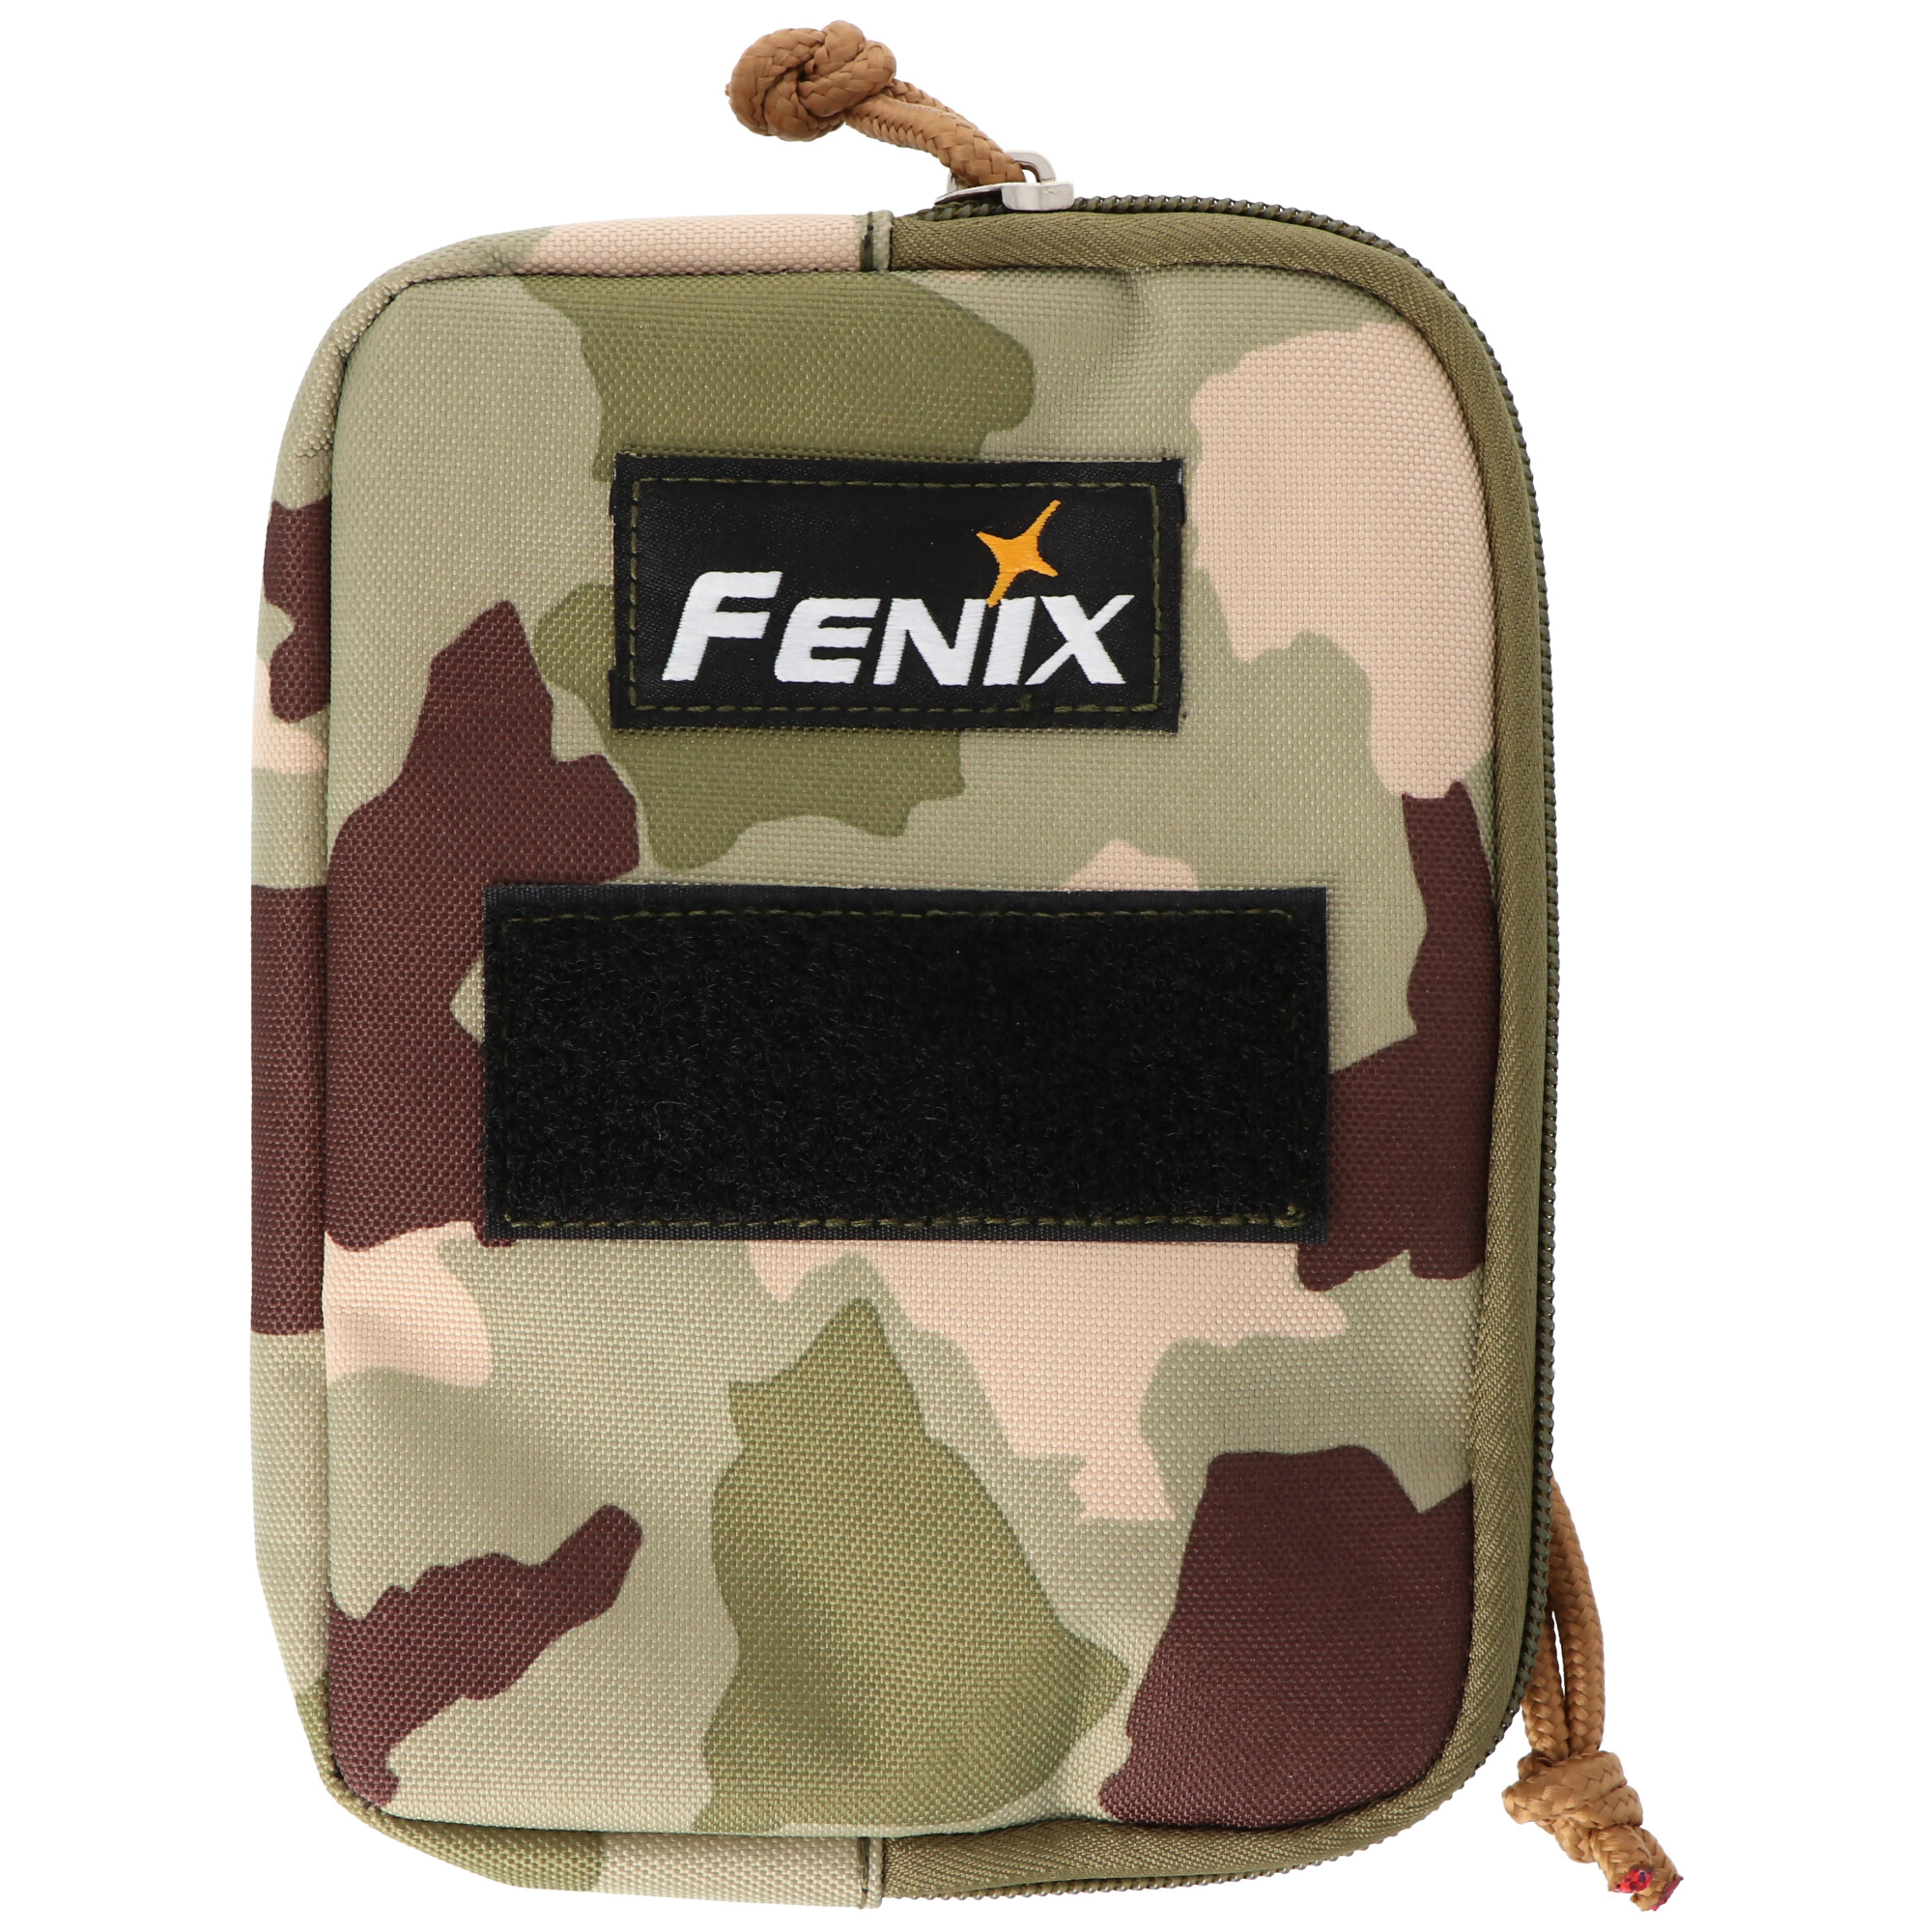 Fenix APB-30 Transporttasche für Stirnlampen und Zubehör, Aufbewahrungstasche für Stirnlampen, passend für alle Fenix Kopflampen, Camouflage Design